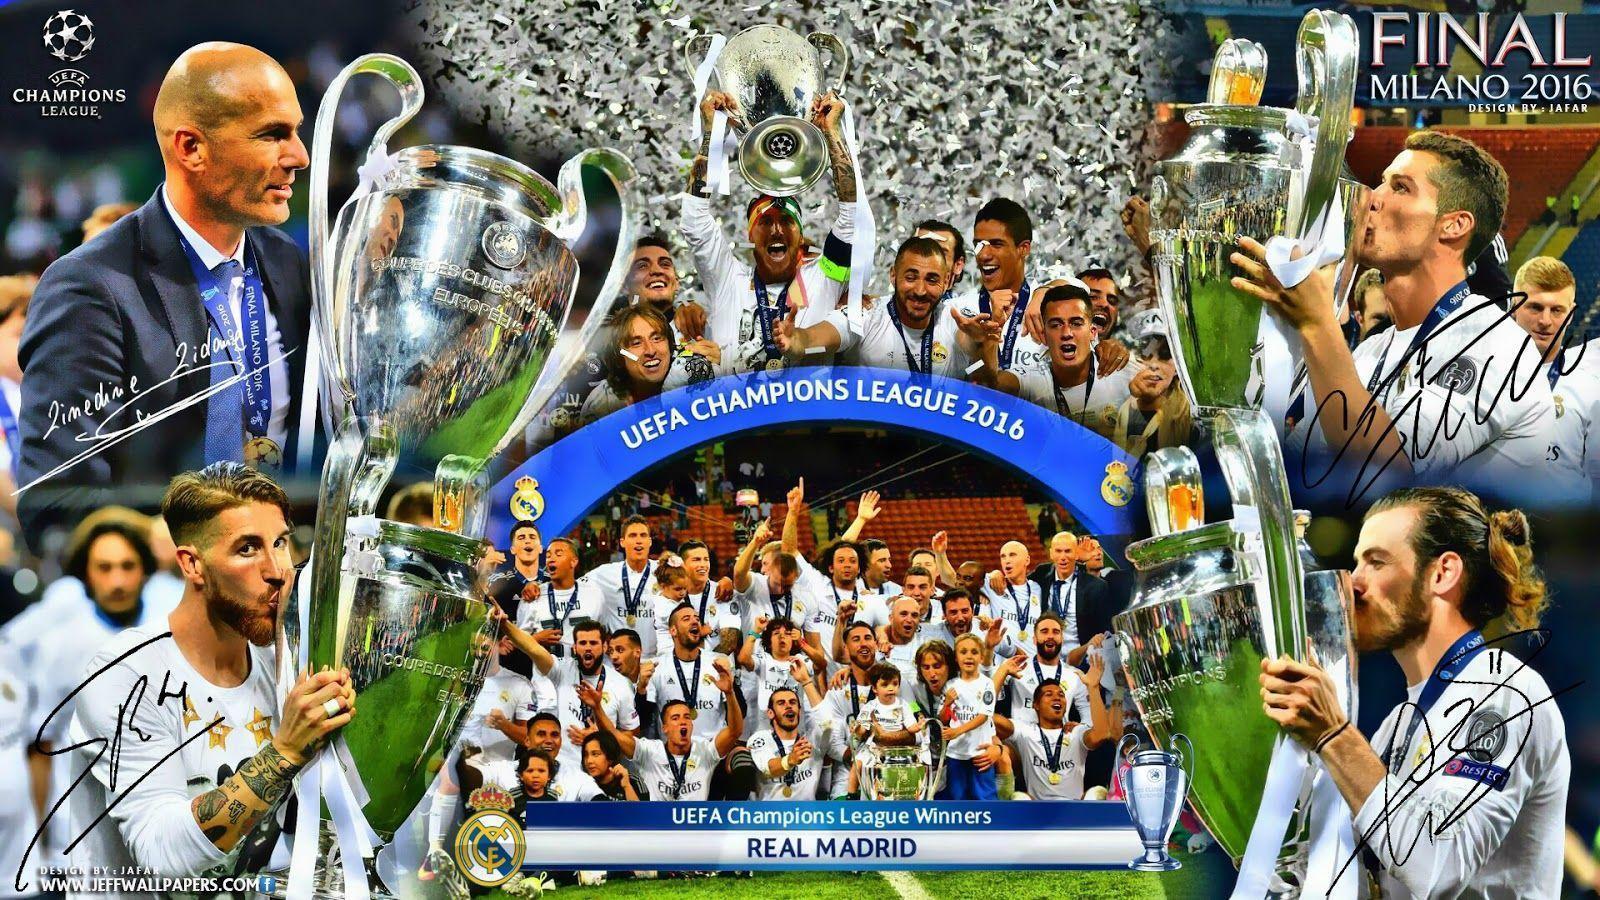 Free download 60 Real Madrid 4K Wallpapers Download - Real Madrid wallpaper: Free download 60 Real Madrid 4K Wallpapers Download sẽ cho bạn niềm hưng phấn với hàng loạt những bức hình chất lượng cao về câu lạc bộ bóng đá Real Madrid. Bạn sẽ yêu cầu giải mã từng chi tiết trên màn hình của mình, từ chiếc áo trắng đến những cầu thủ vô địch.